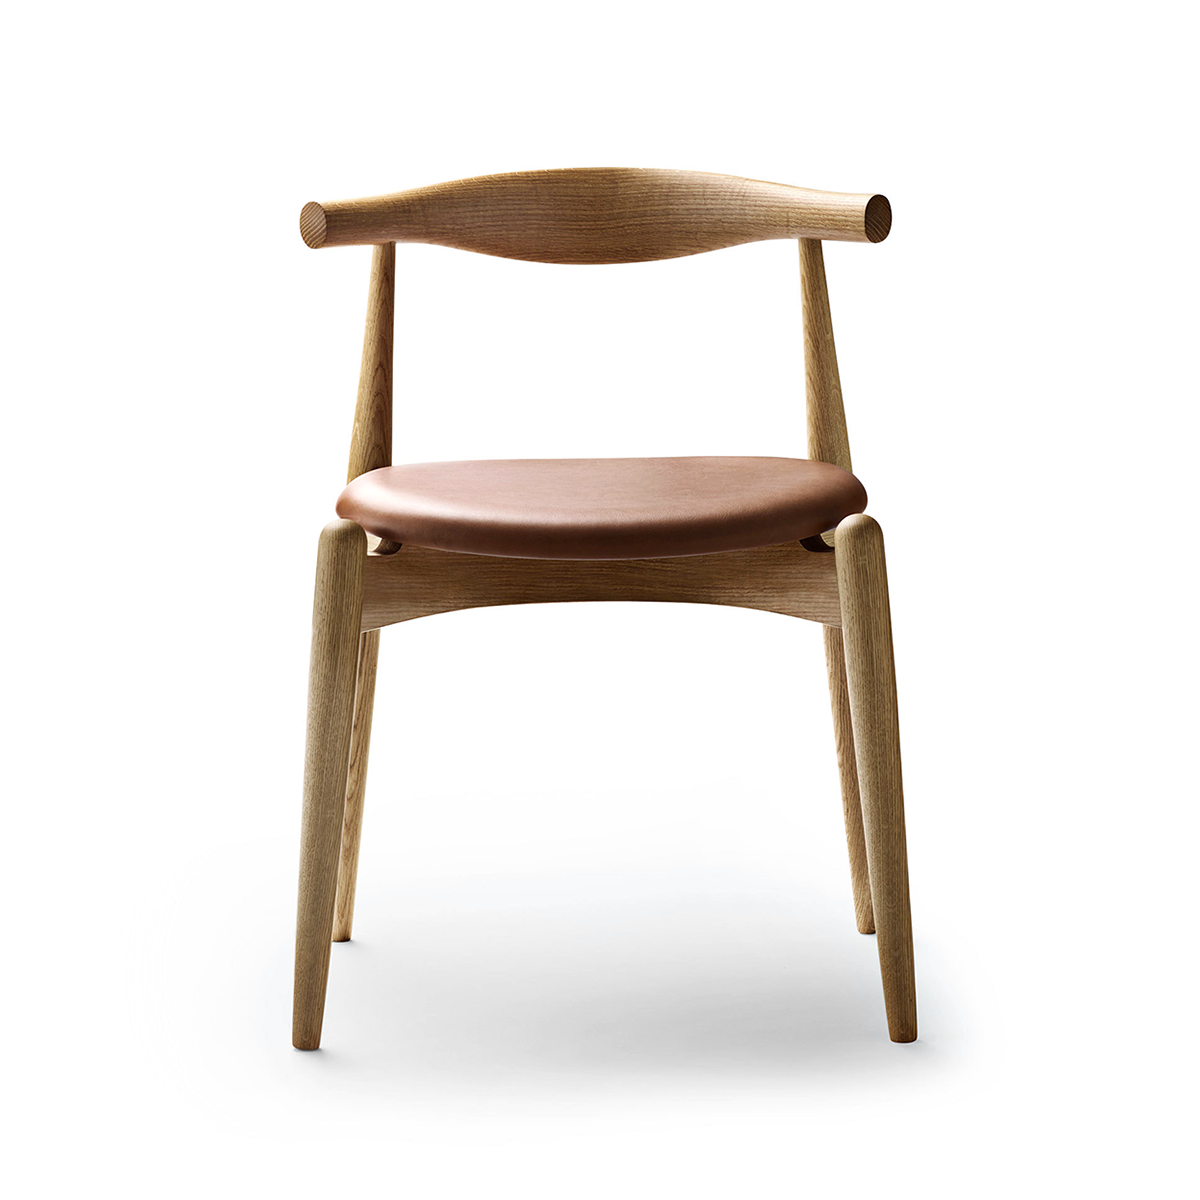 Carl Hansen & Son CH 20 Elbow Chair with Oil Finish 手肘椅 (油裝款)